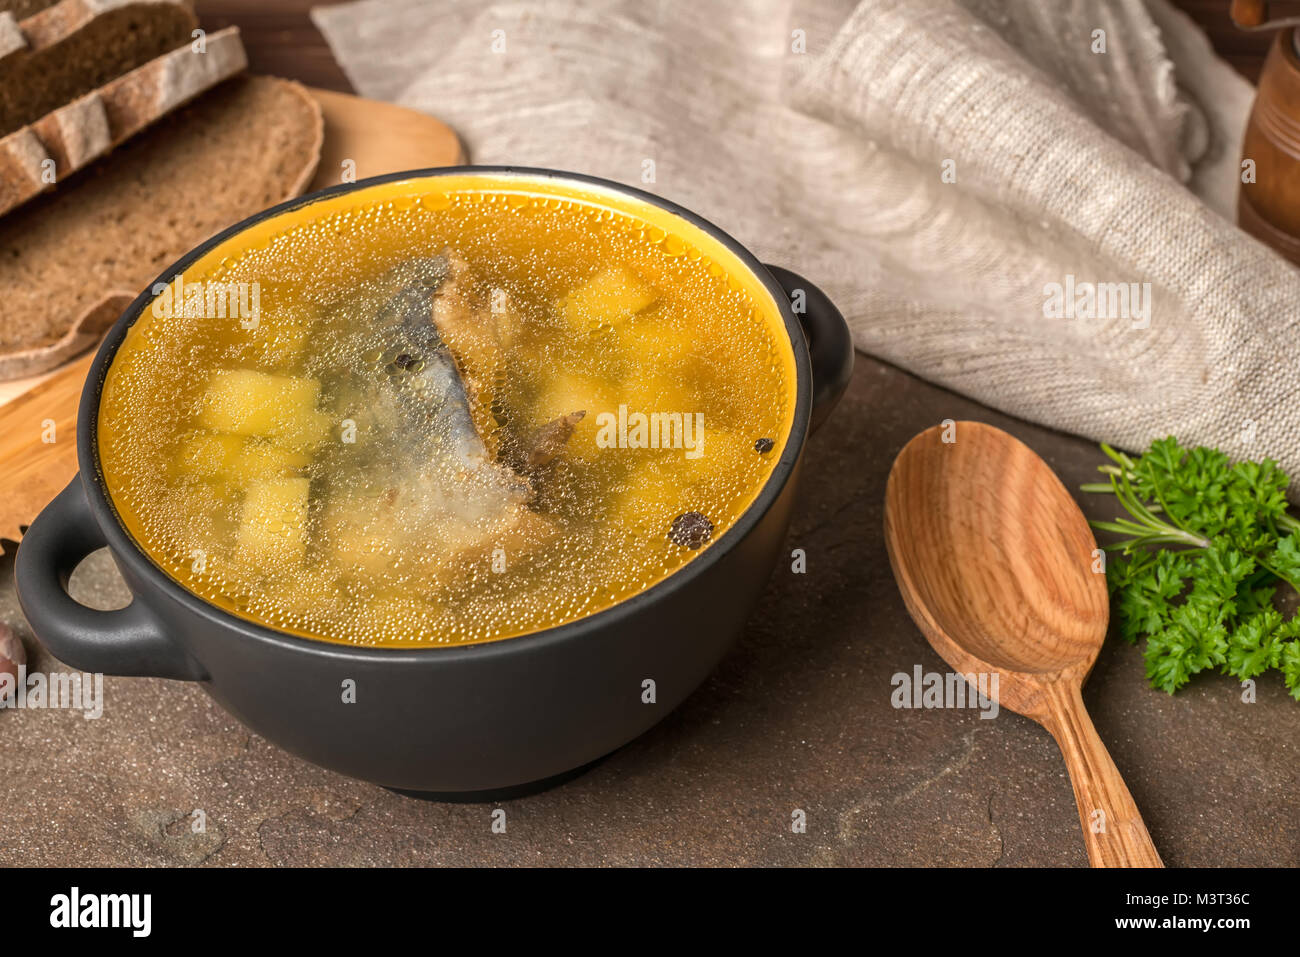 Trasparente la zuppa di pesce con lo storione, patate in piastra nera, decorato di aglio, prezzemolo in foglie, il cucchiaio di legno e tagliate il pane di segale, close up Foto Stock